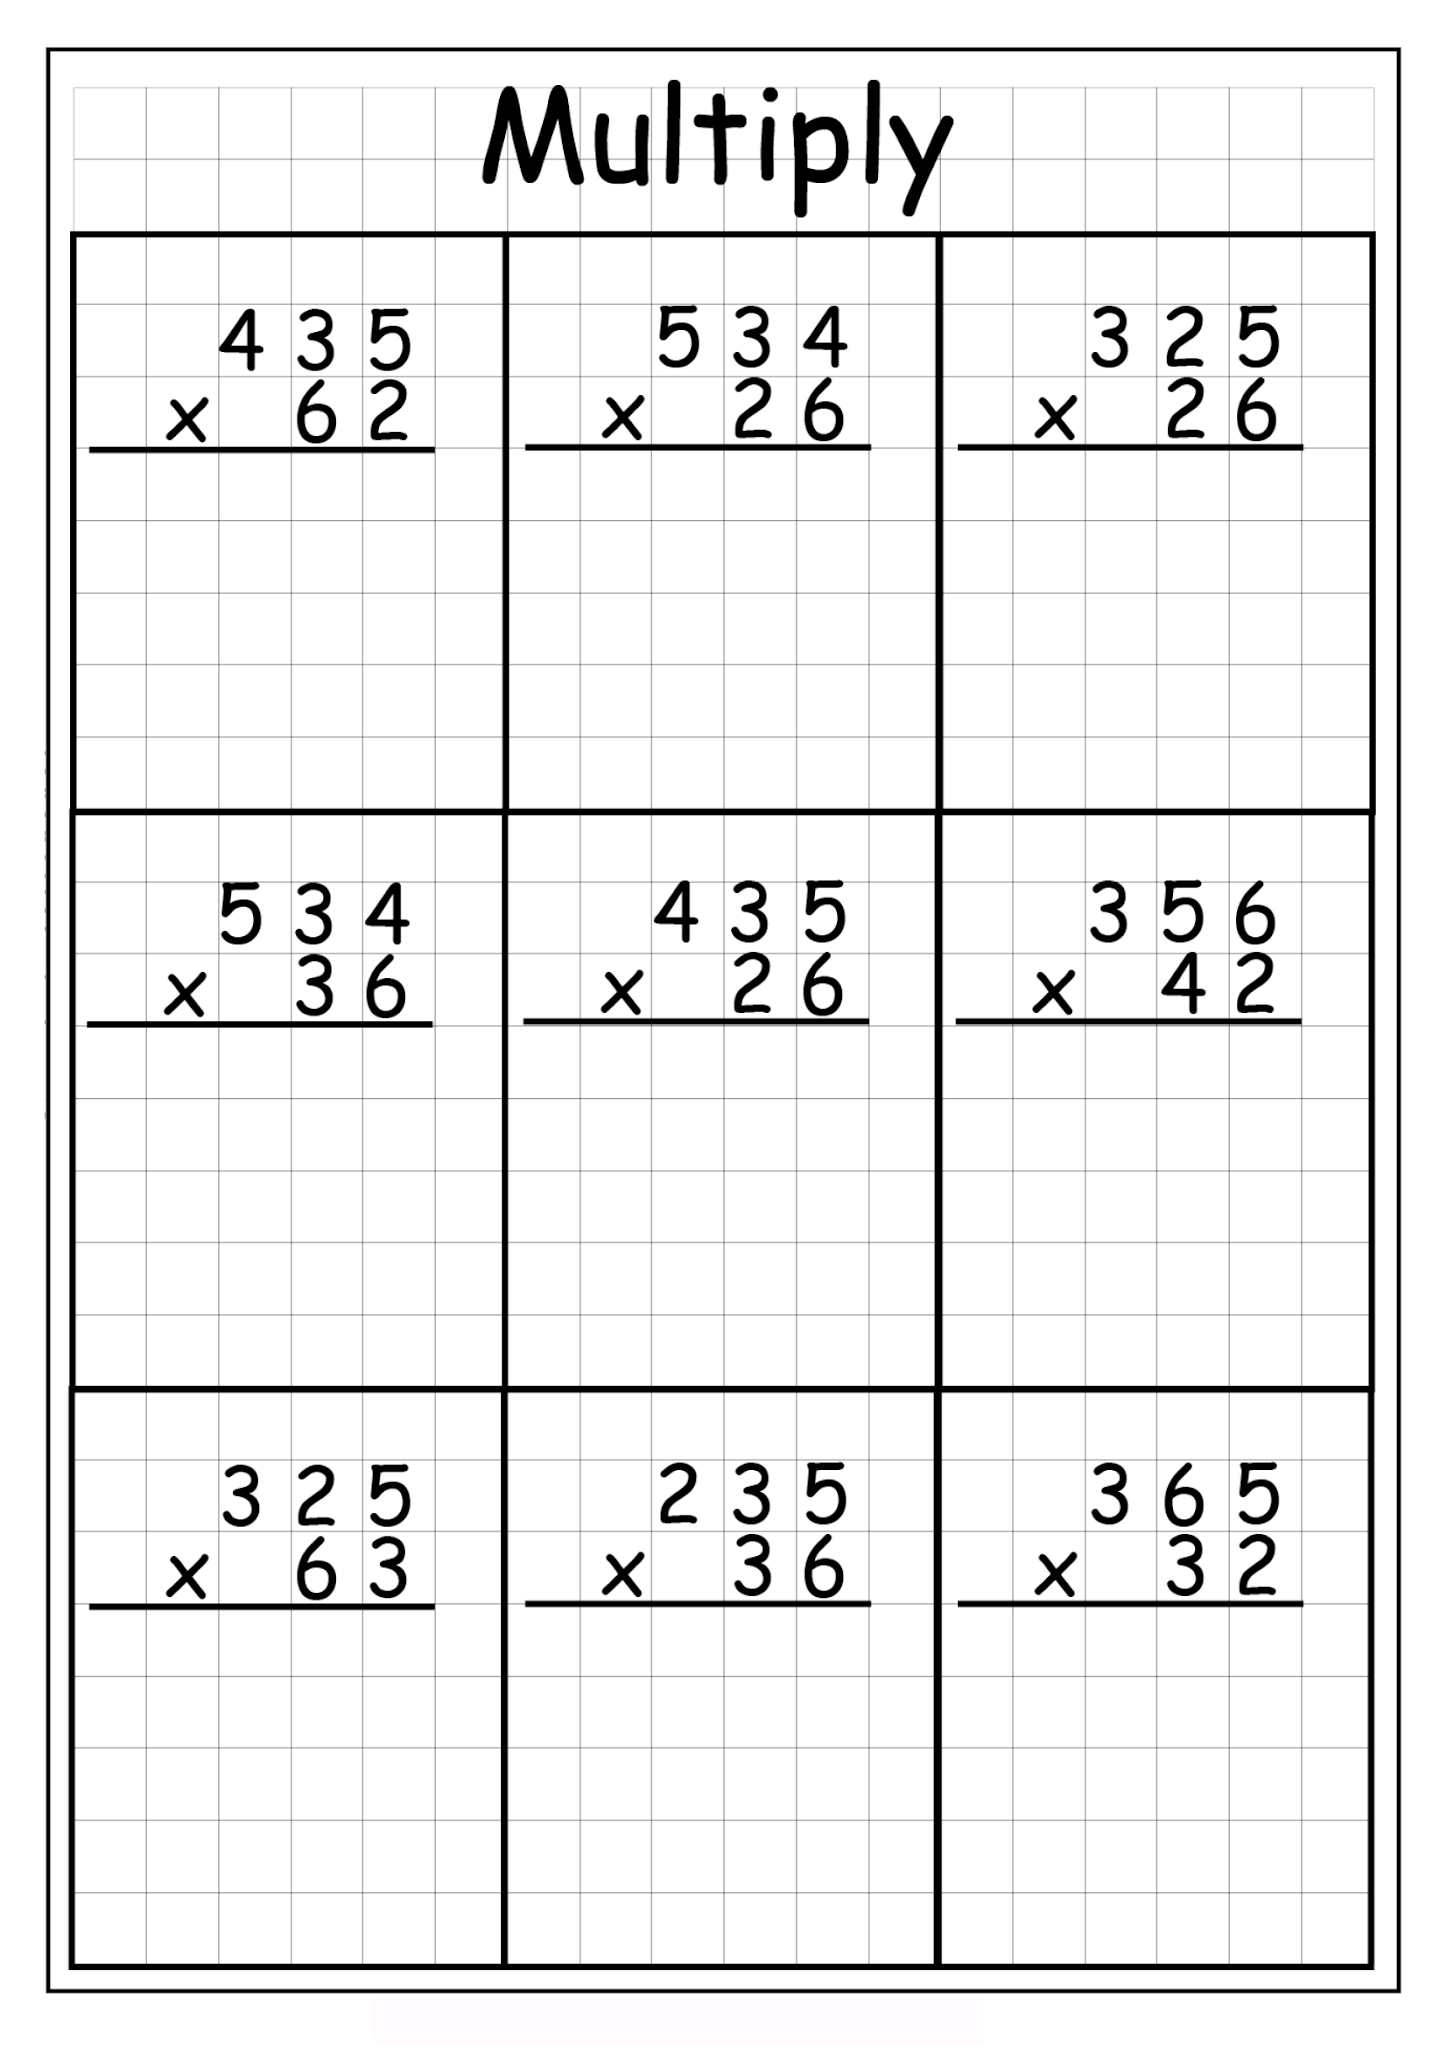 multiplying-2-digits-by-2-digits-pdf